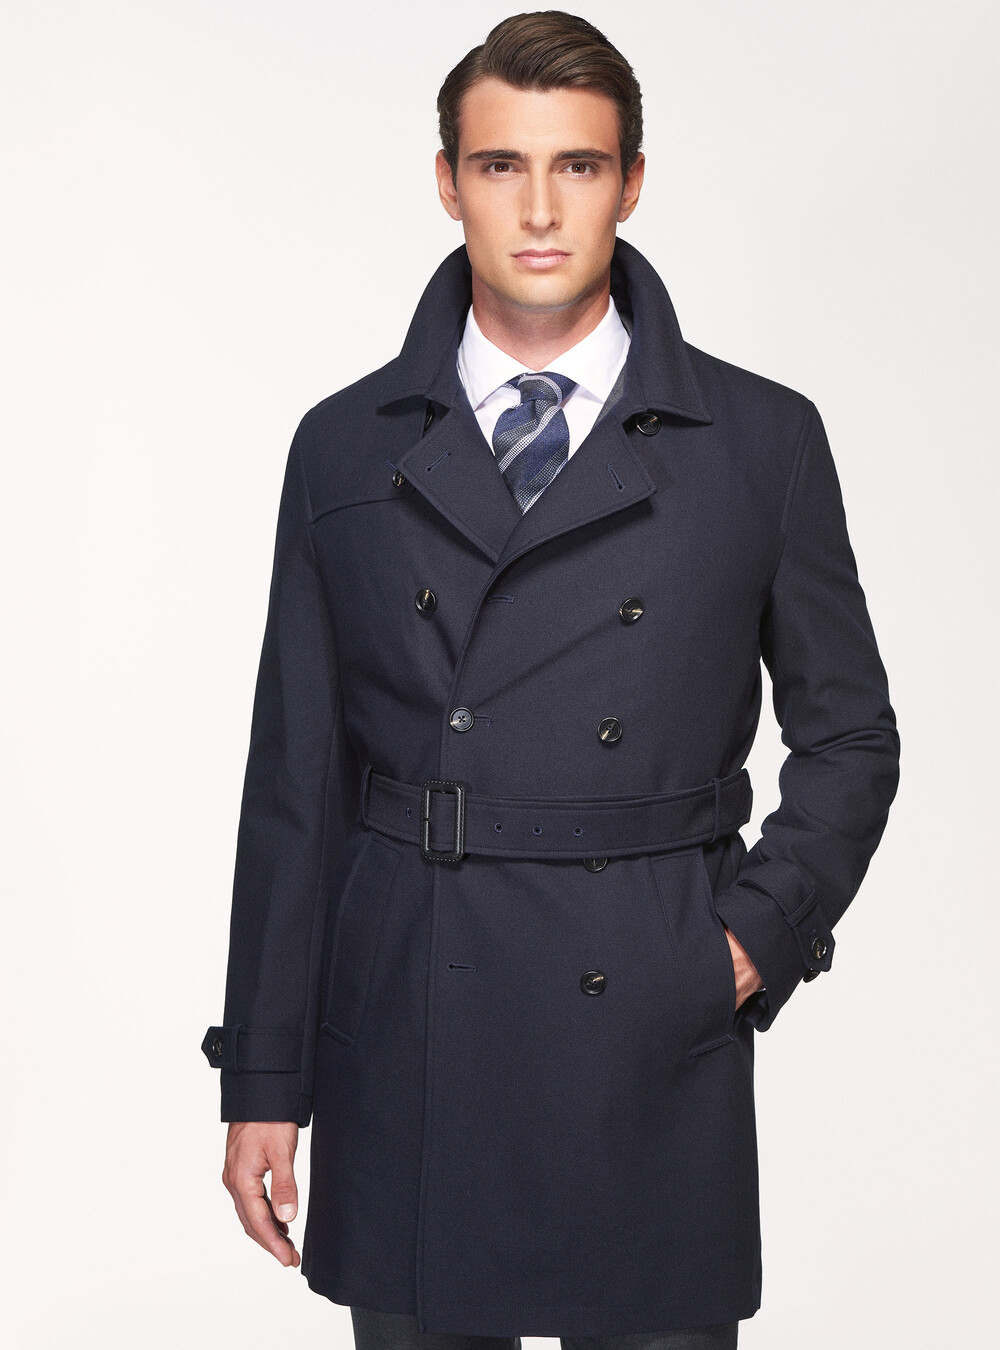 Men's Coats and Jackets | Gutteridge